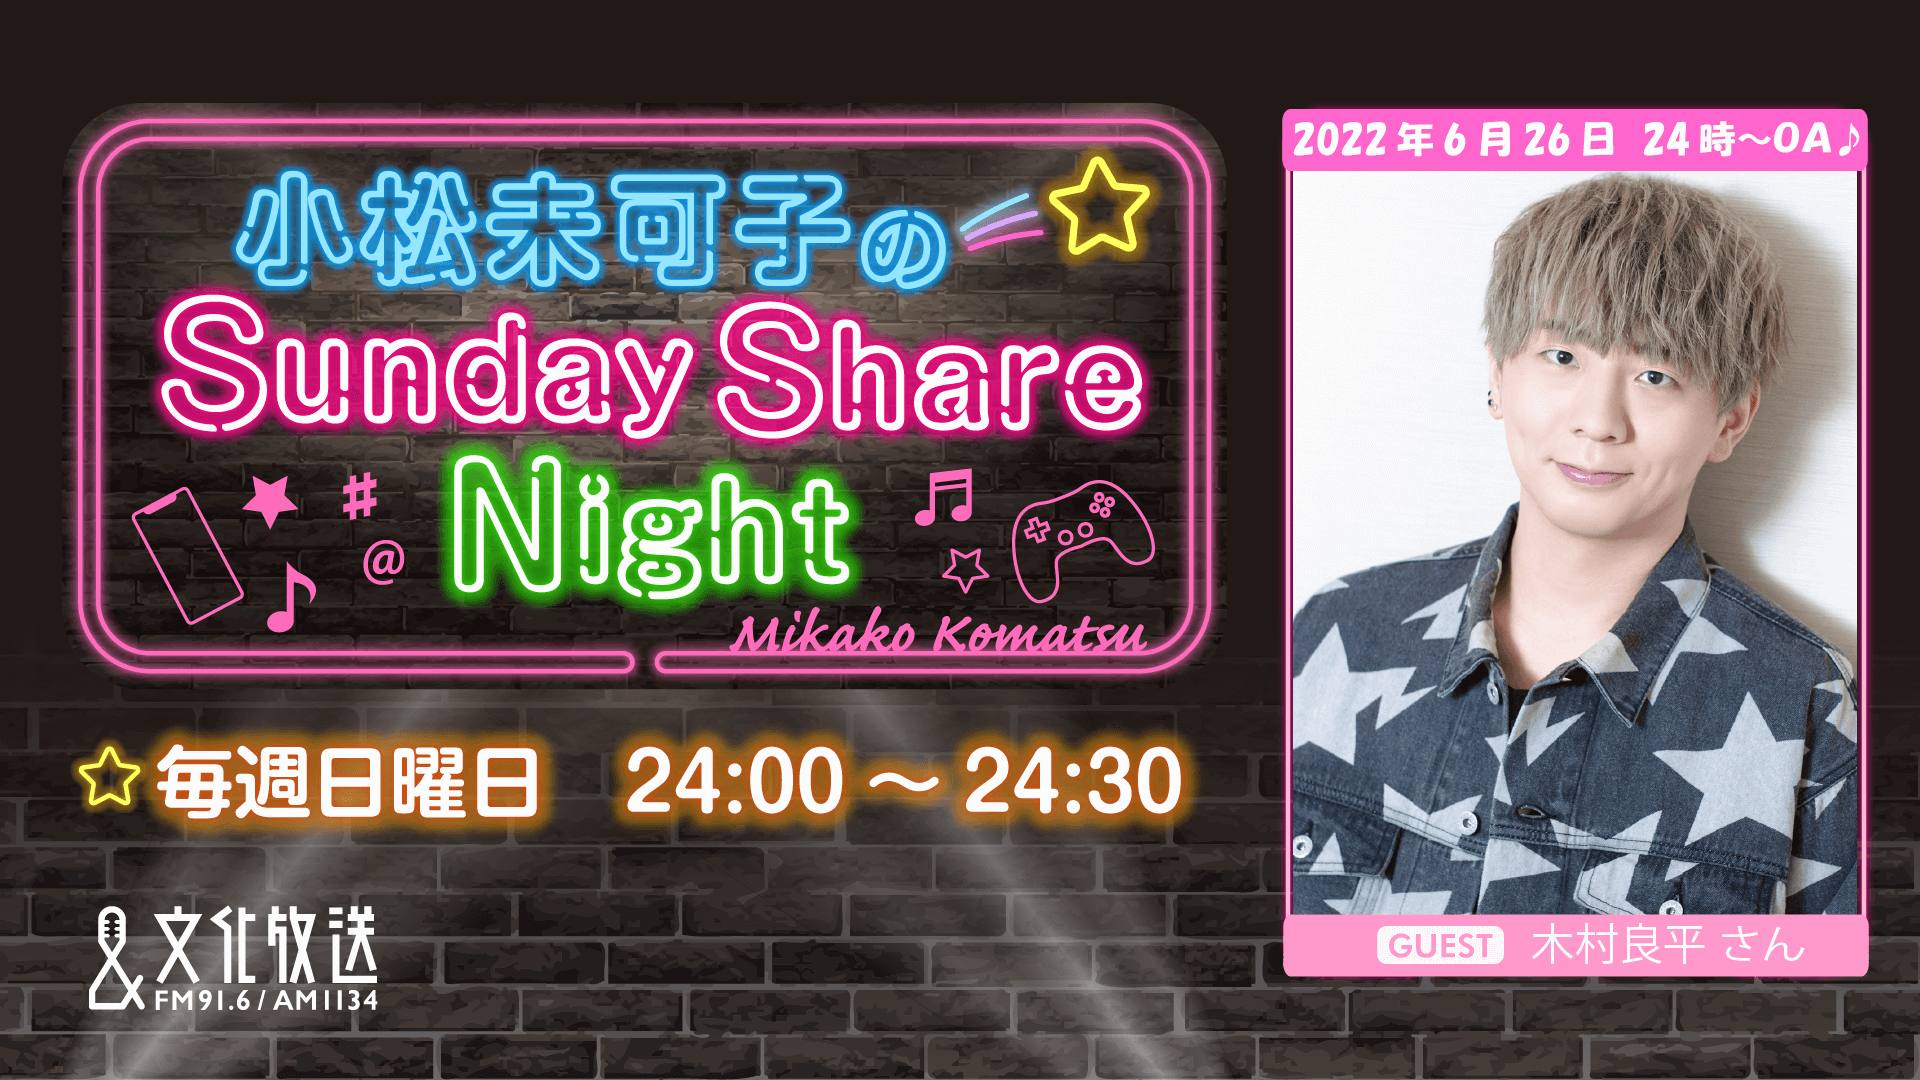 6月26日の放送には、ゲストに木村良平さんが登場！『小松未可子のSunday Share Night』